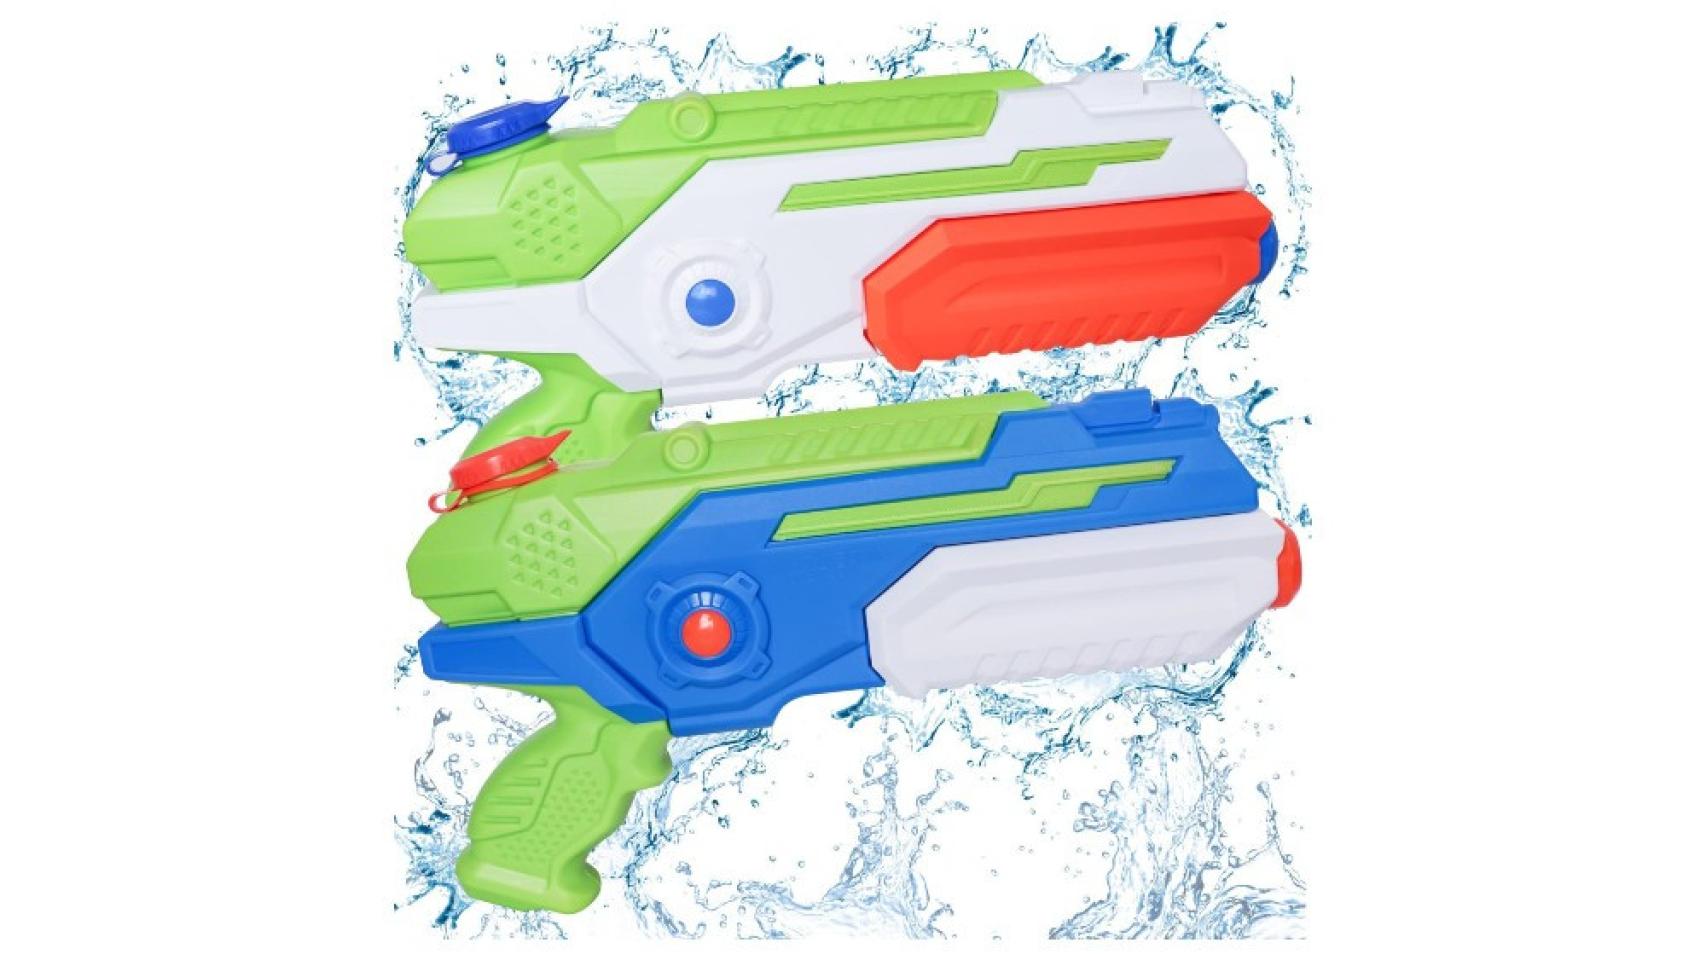 Diversión refrescante ilimitada con las mejores pistolas de agua